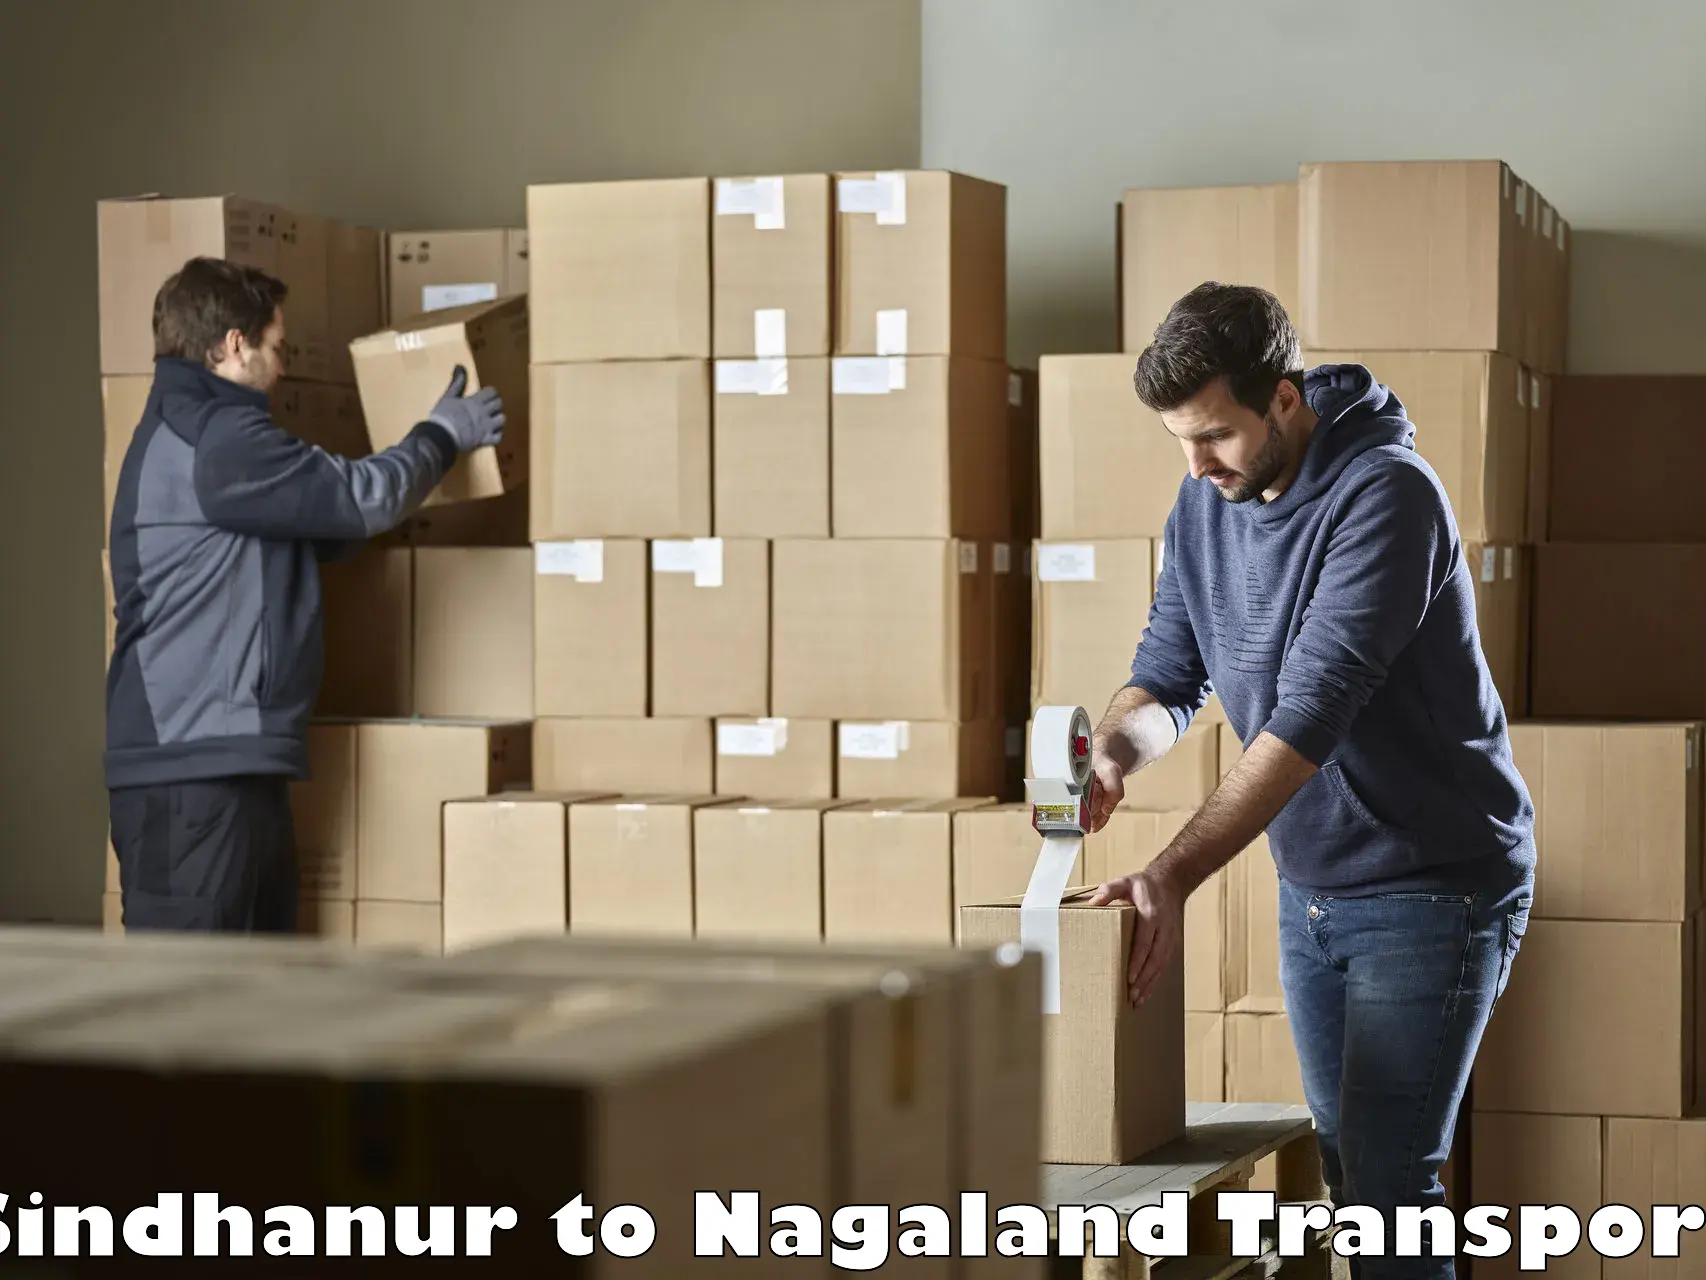 Furniture transport service Sindhanur to NIT Nagaland